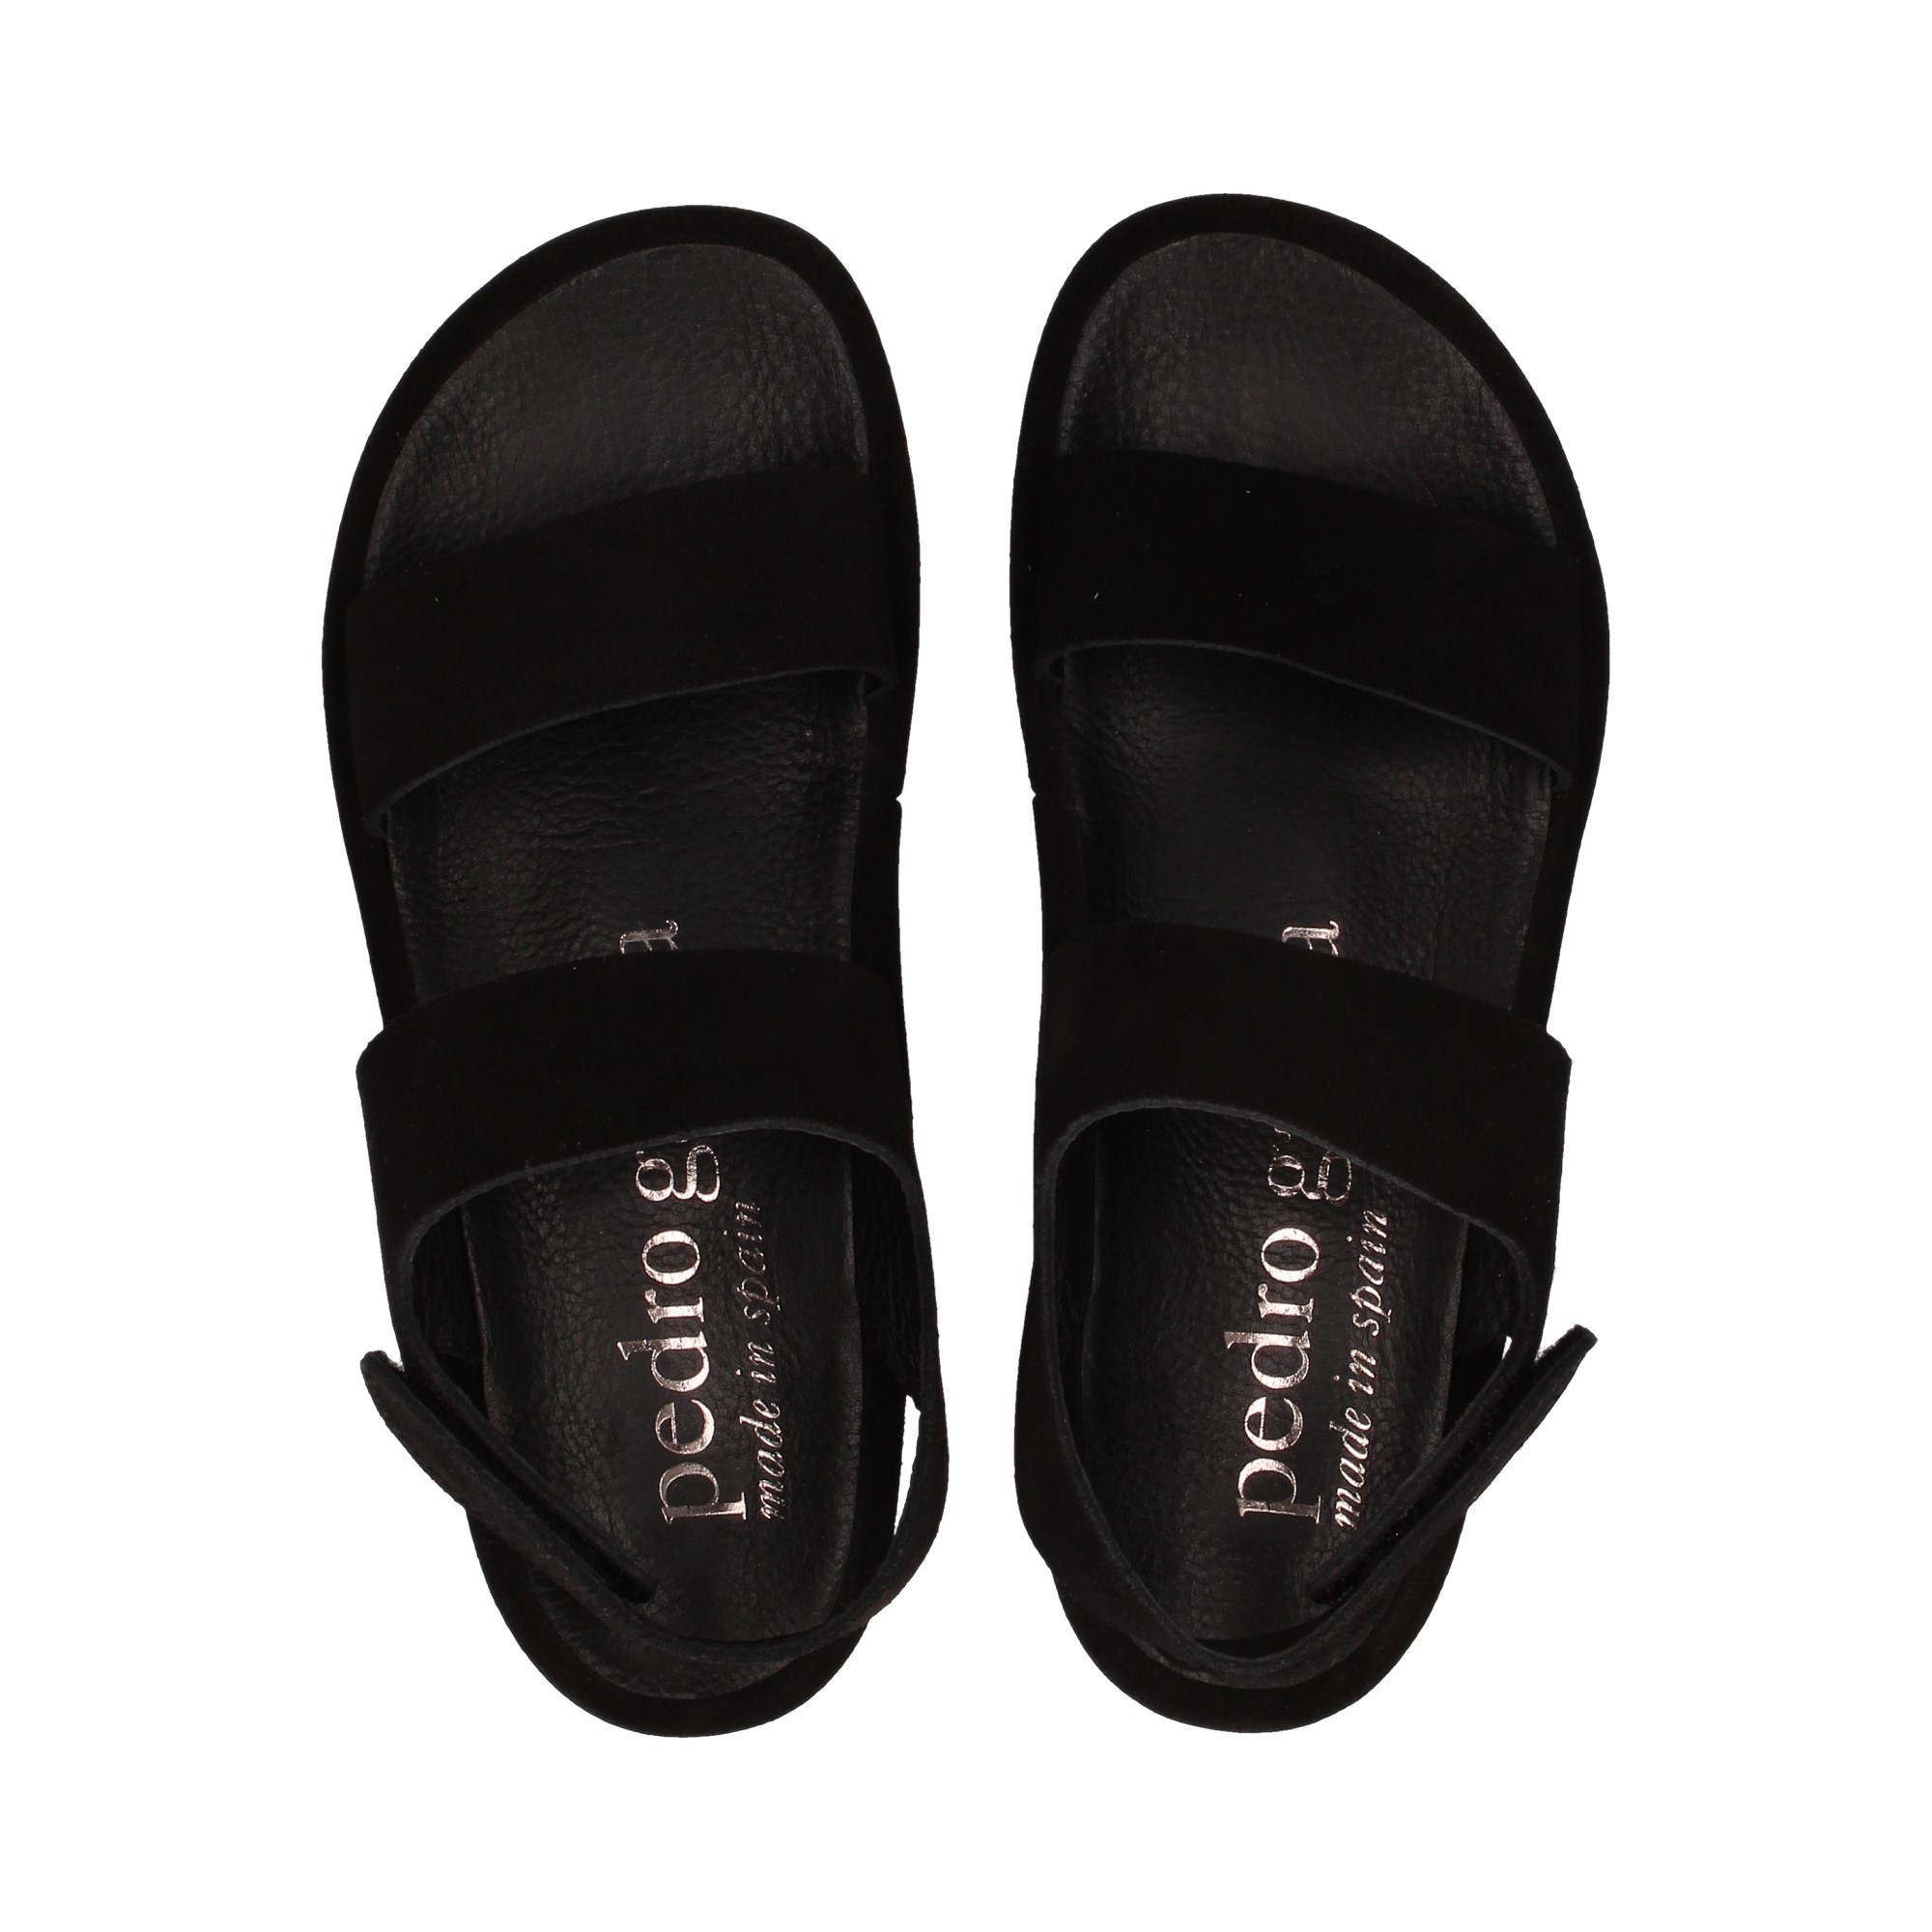 sandal-platform-black